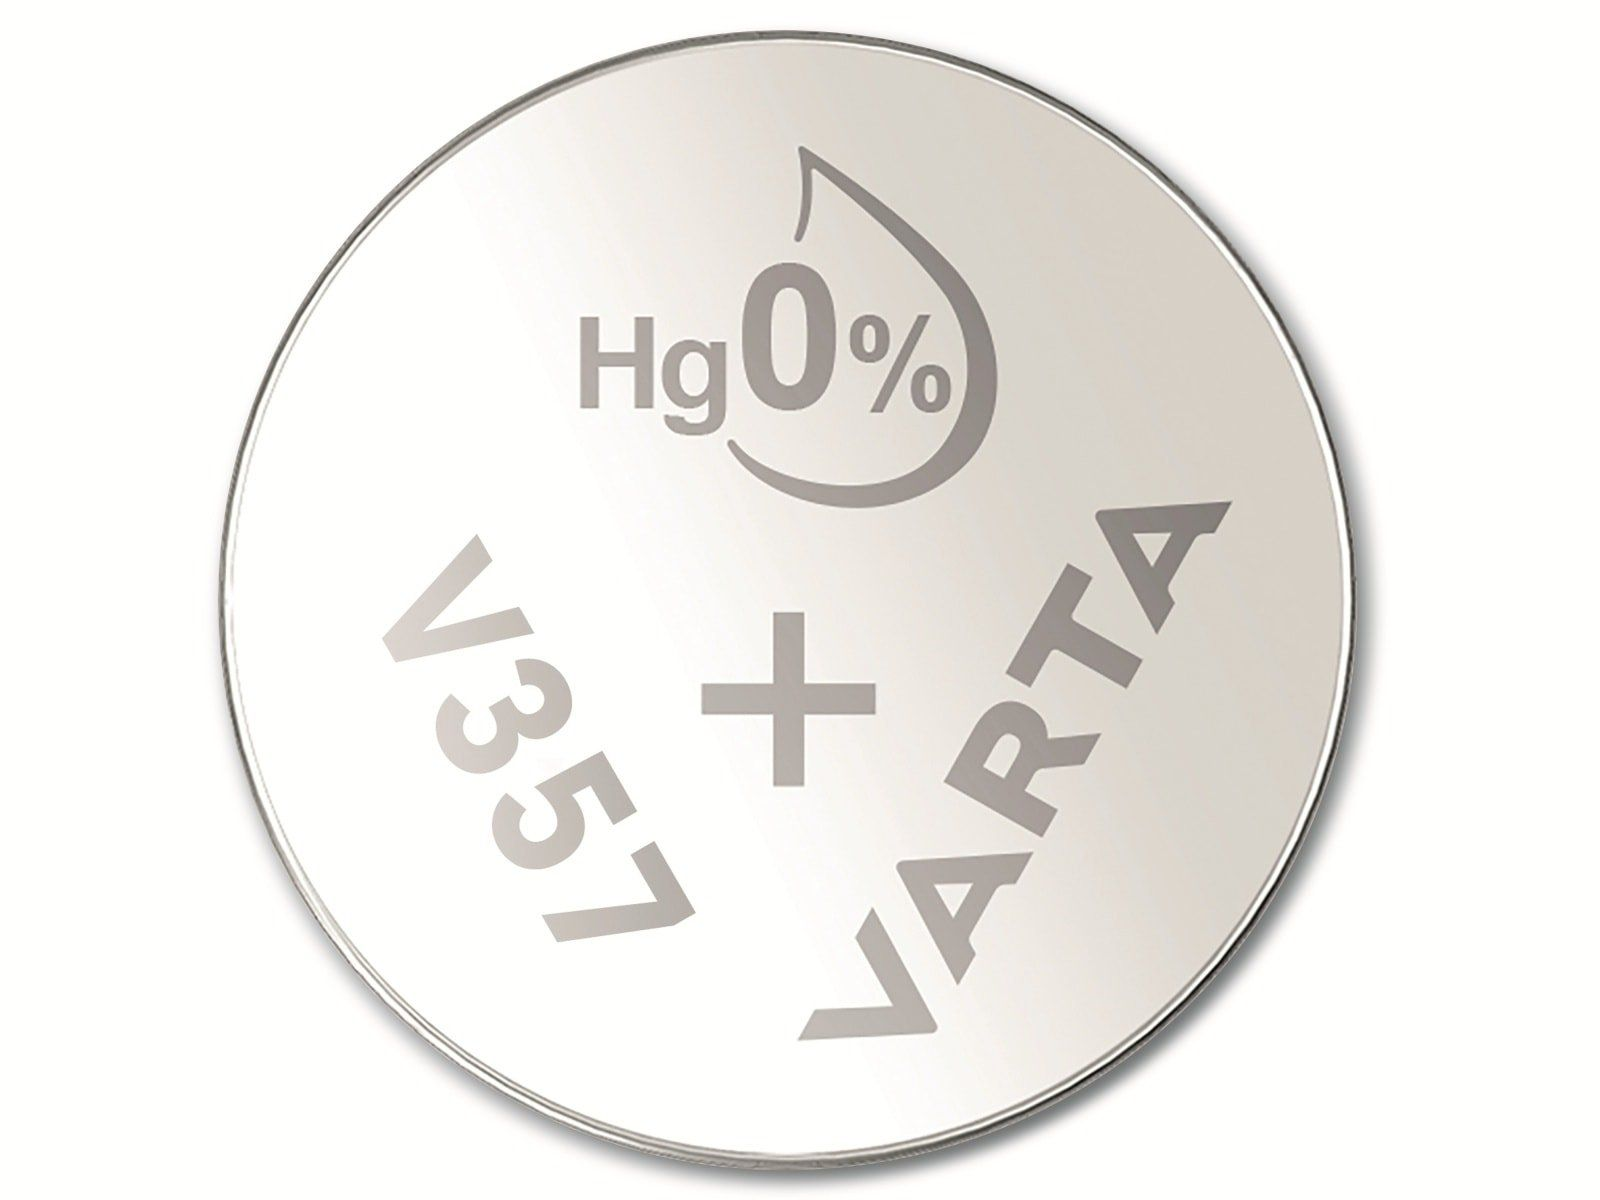 VARTA Knopfzelle Silver Knopfzelle Oxide, Stück 10 1.55V, Silberoxid 357 SR44